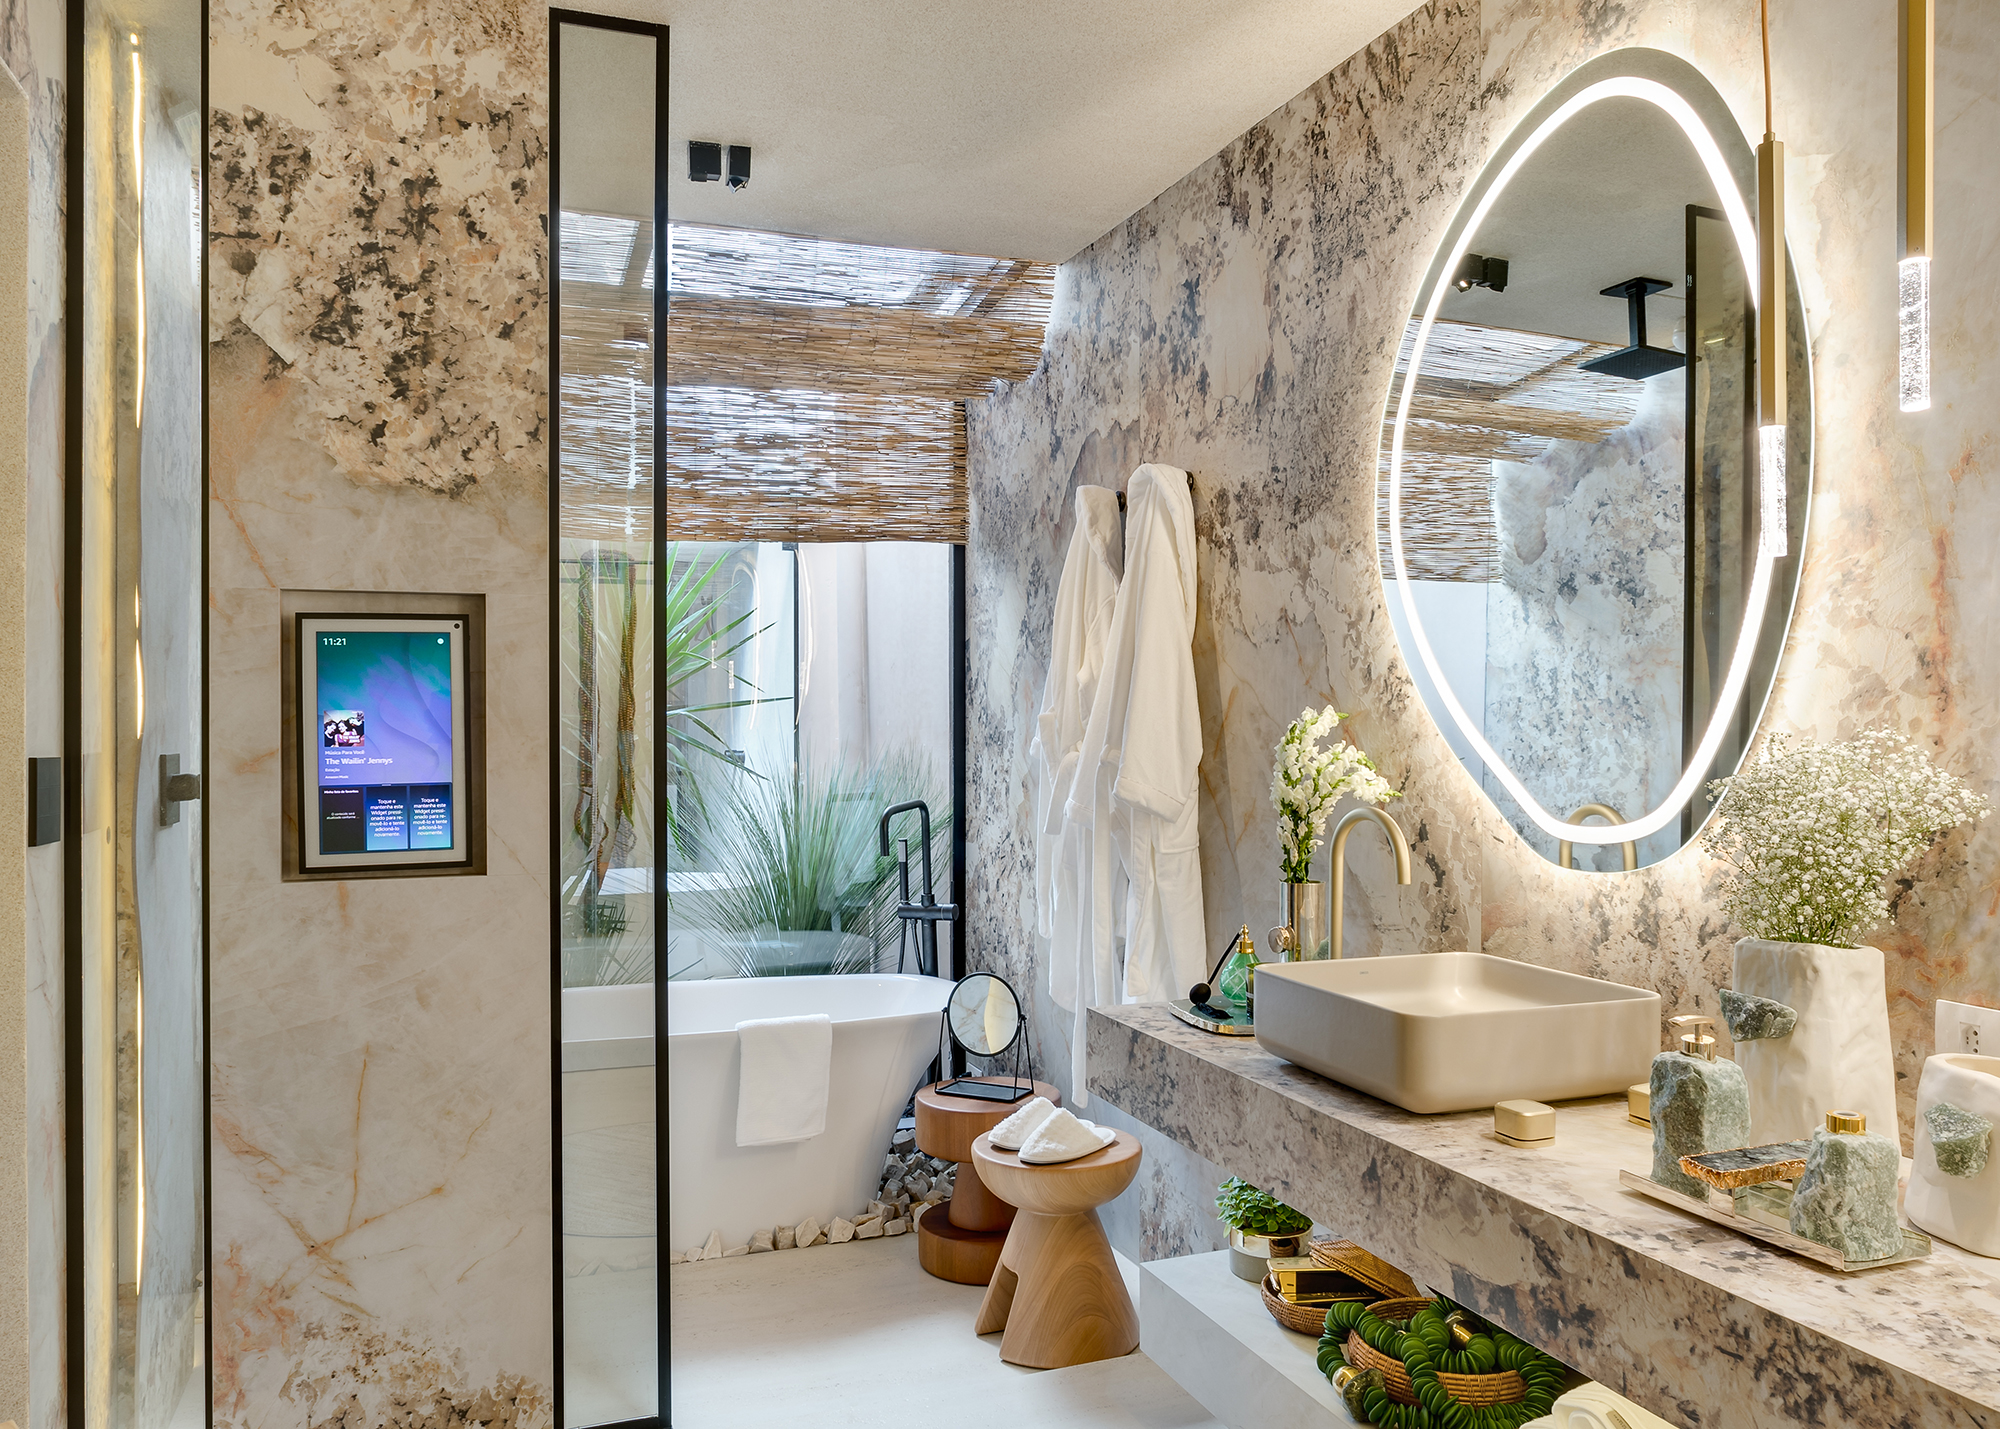 Projeto "Sala de Banho do Casal", de Diego Miranda e Zeh Pantarolli, é vencedor na categoria Destaque Banheiros.